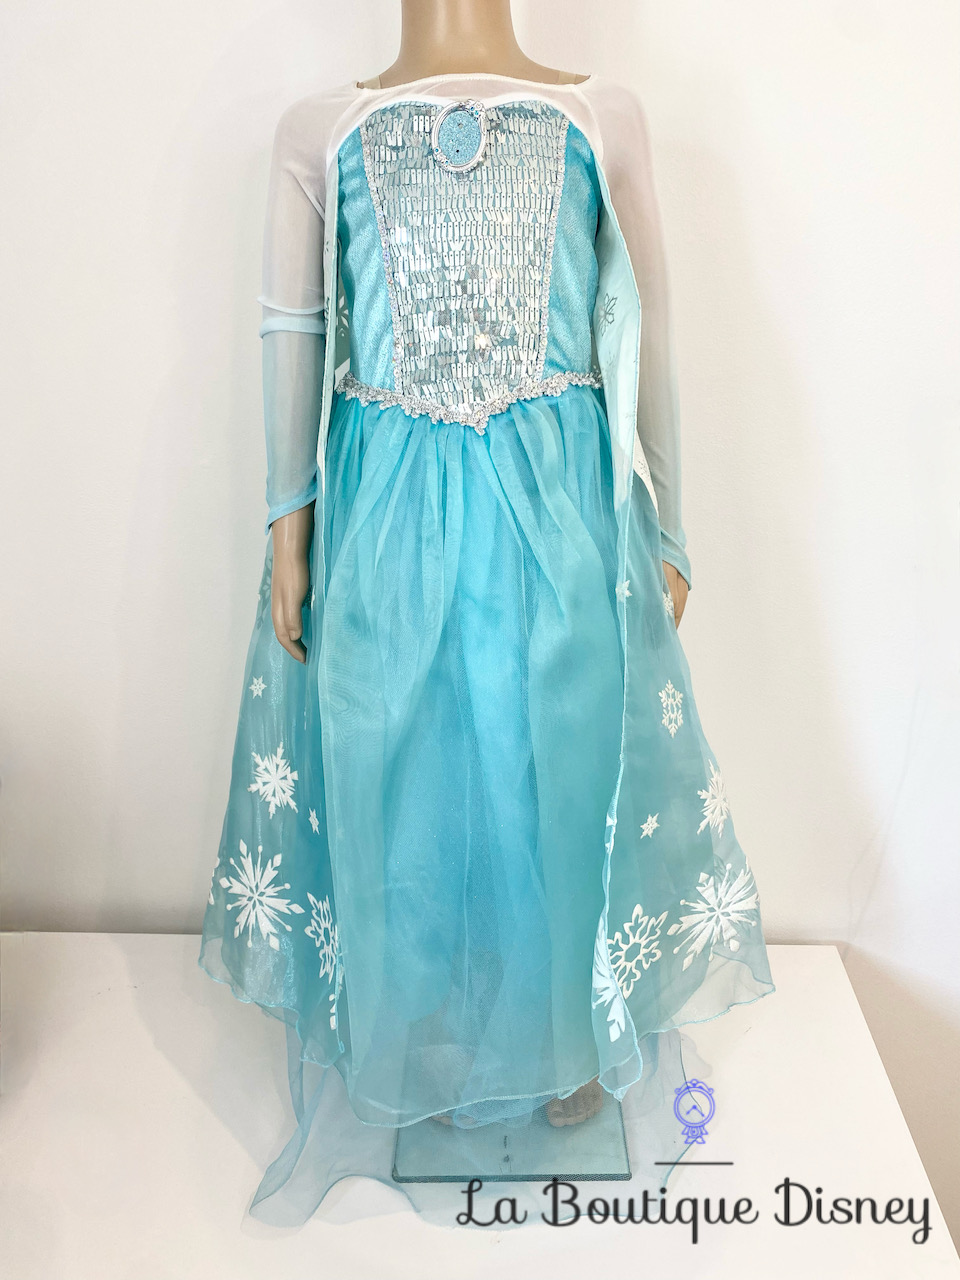 Déguisement Elsa La reine des neiges Disney Rubies Costume taille 5-6 ans  robe princesse bleu portrait - Déguisements/Taille 4 à 6 ans - La Boutique  Disney